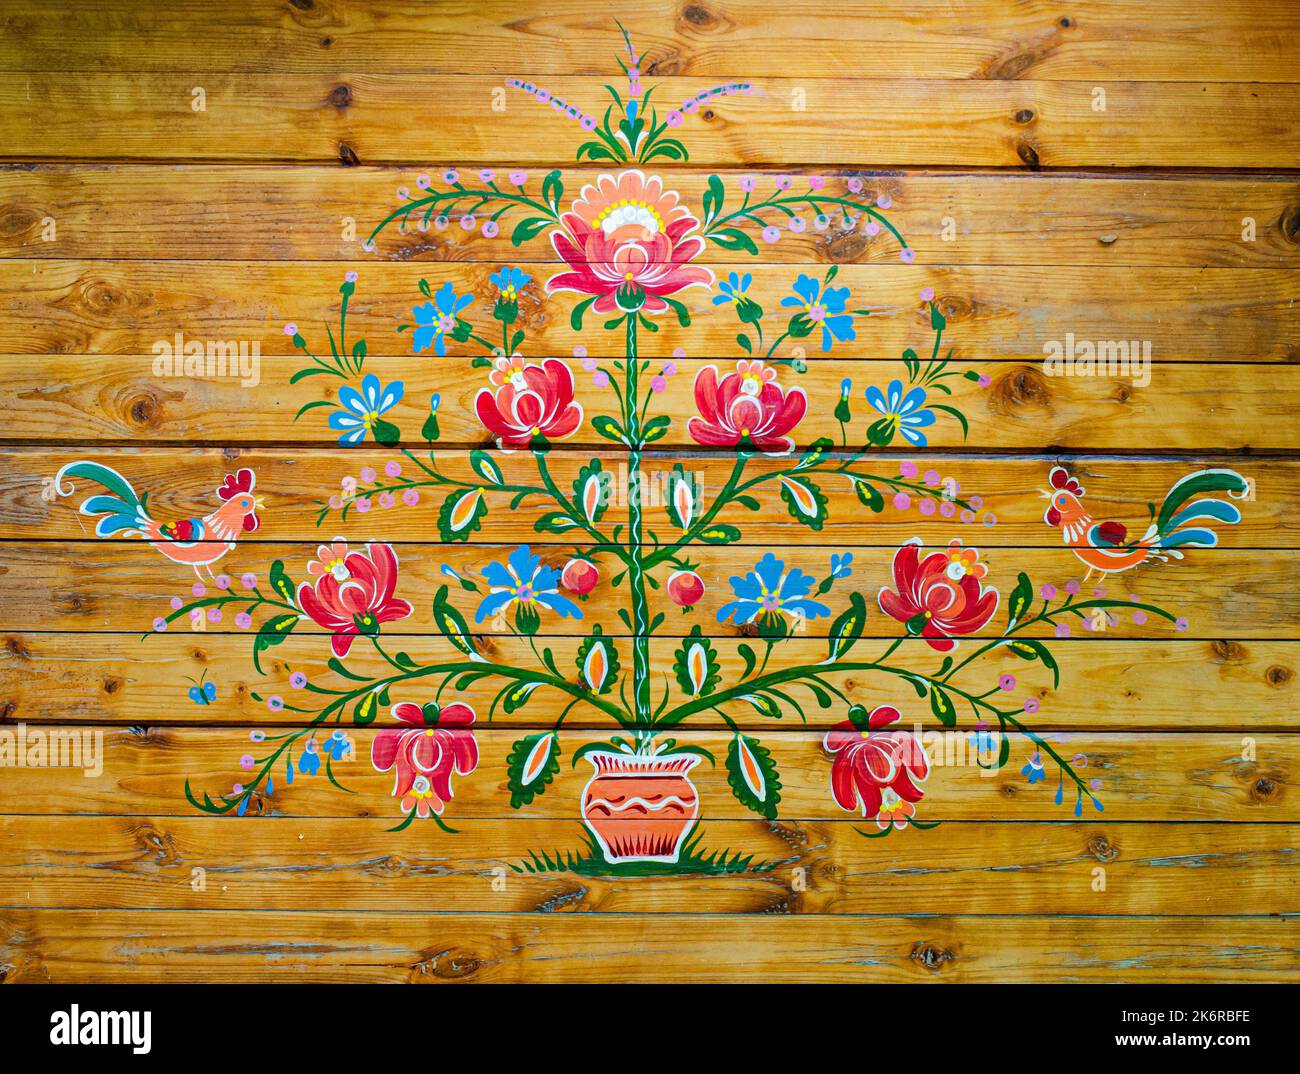 Plateau Petrykivka ukrainien, style traditionnel de peinture décorative, souvenirs artisanaux sur fond de bois sombre Banque D'Images